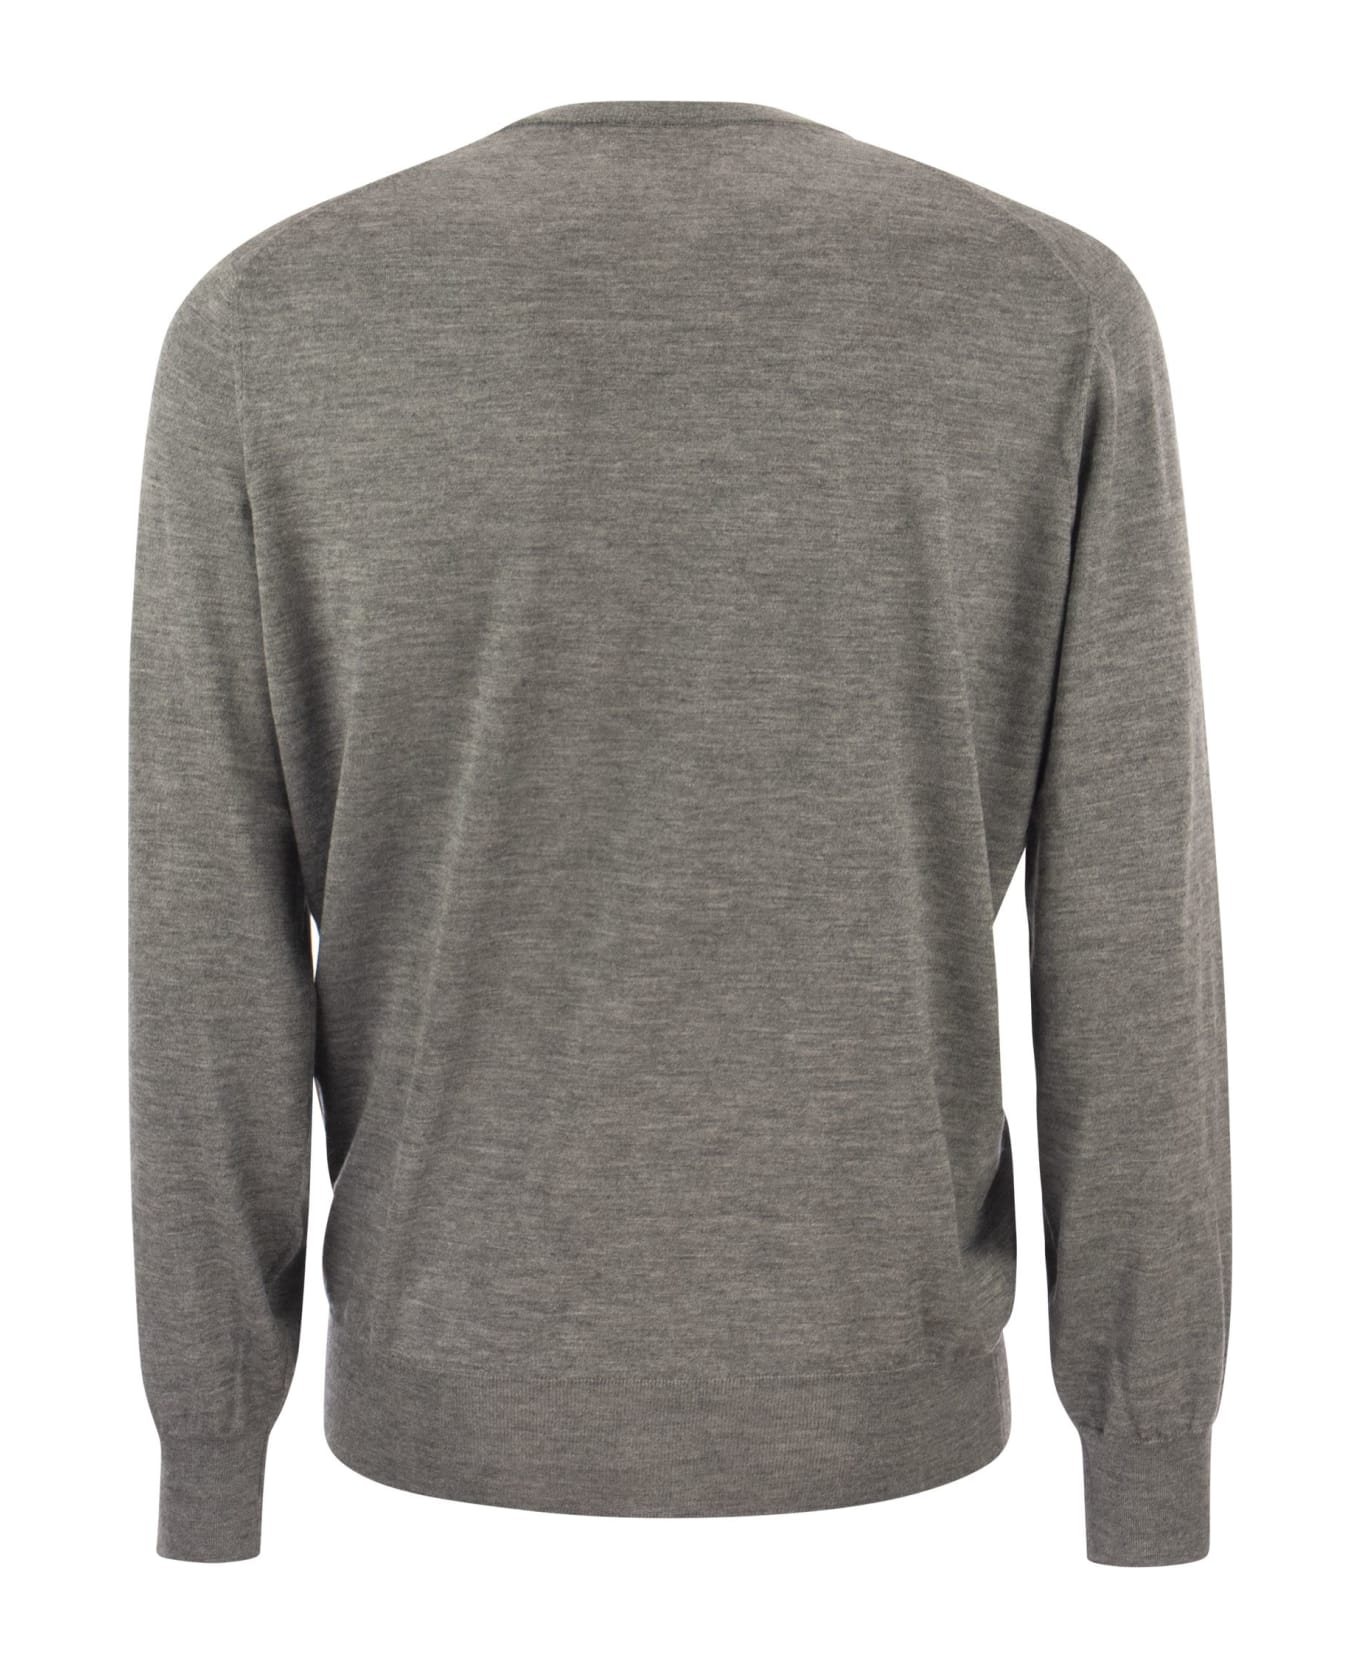 Brunello Cucinelli Lightweight Cashmere And Silk Crew-neck Sweater - Melange Grey フリース